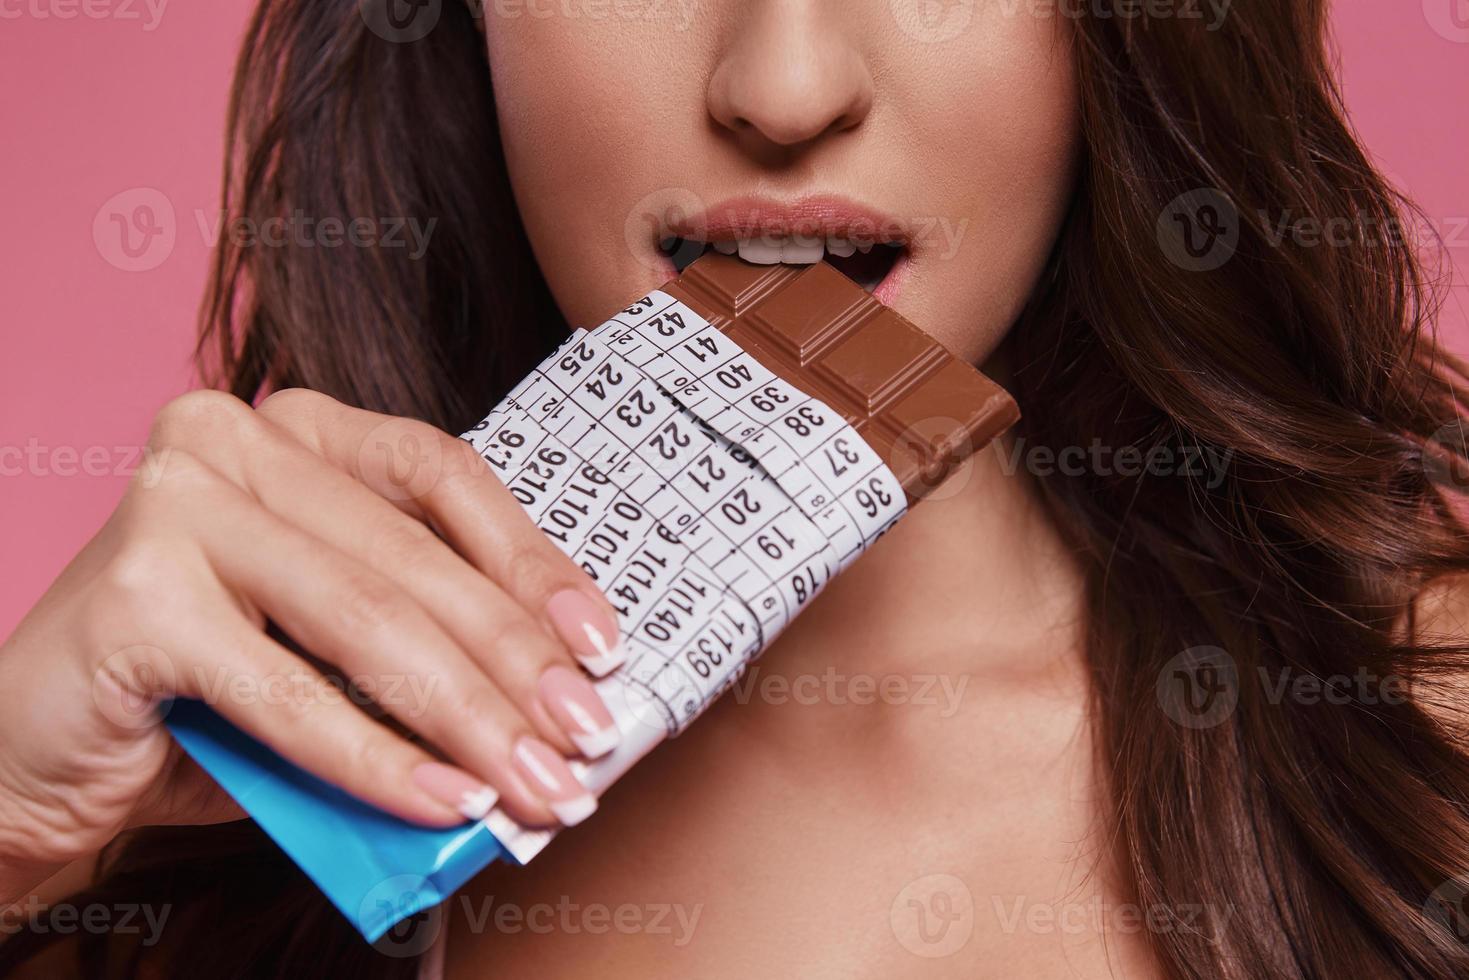 comida prohibida. Cerca de una joven comiendo chocolate envuelto en cinta métrica mientras se enfrenta a un fondo rosa foto